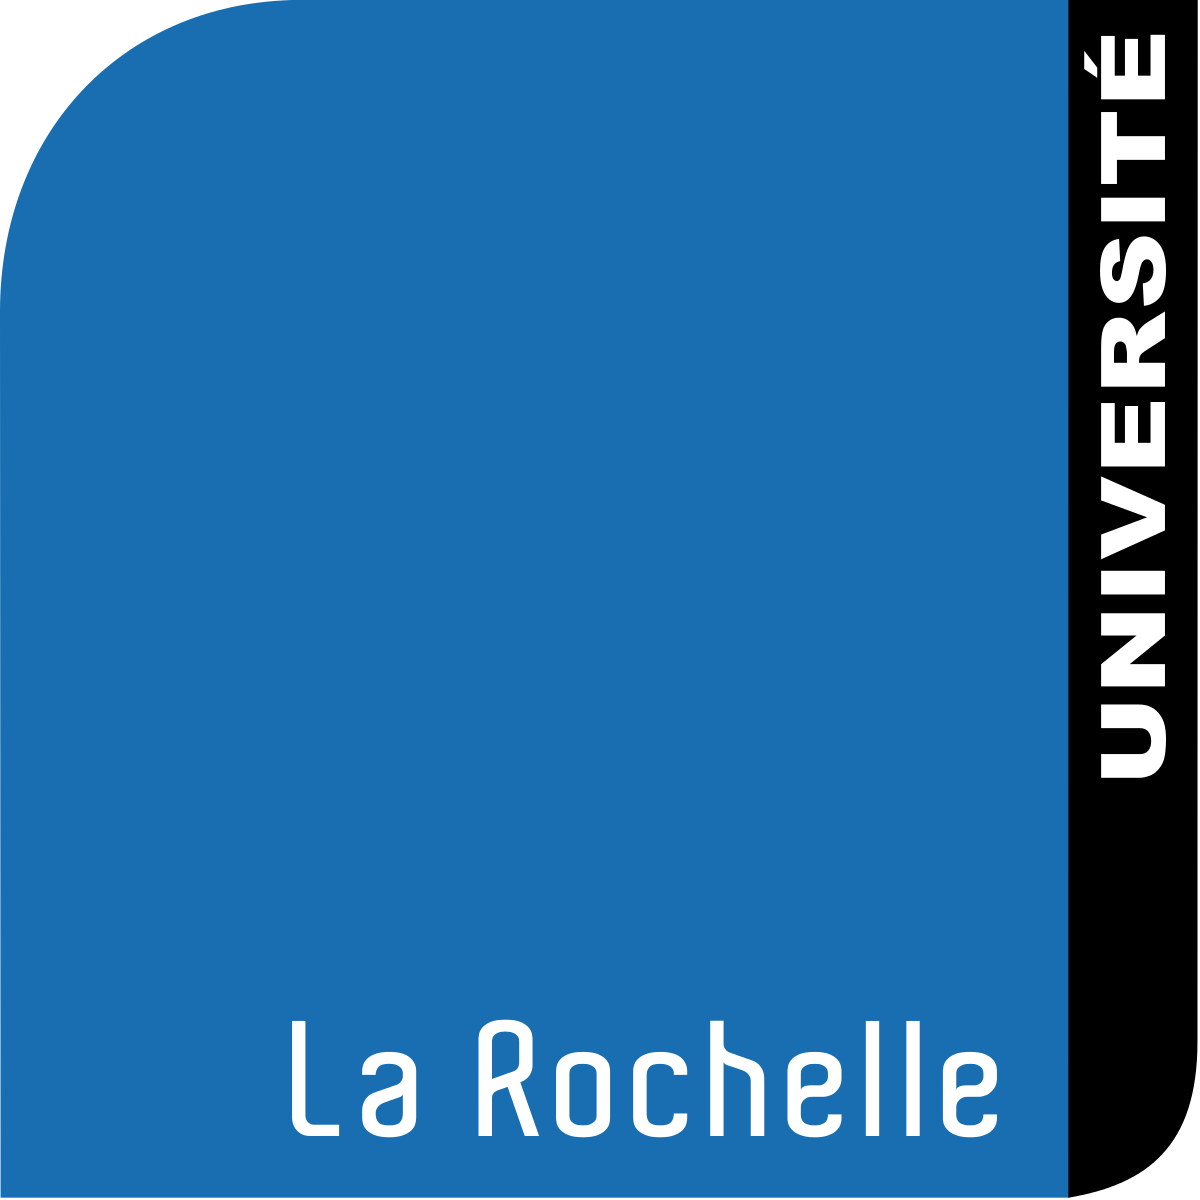 Universidad de la Rochelle